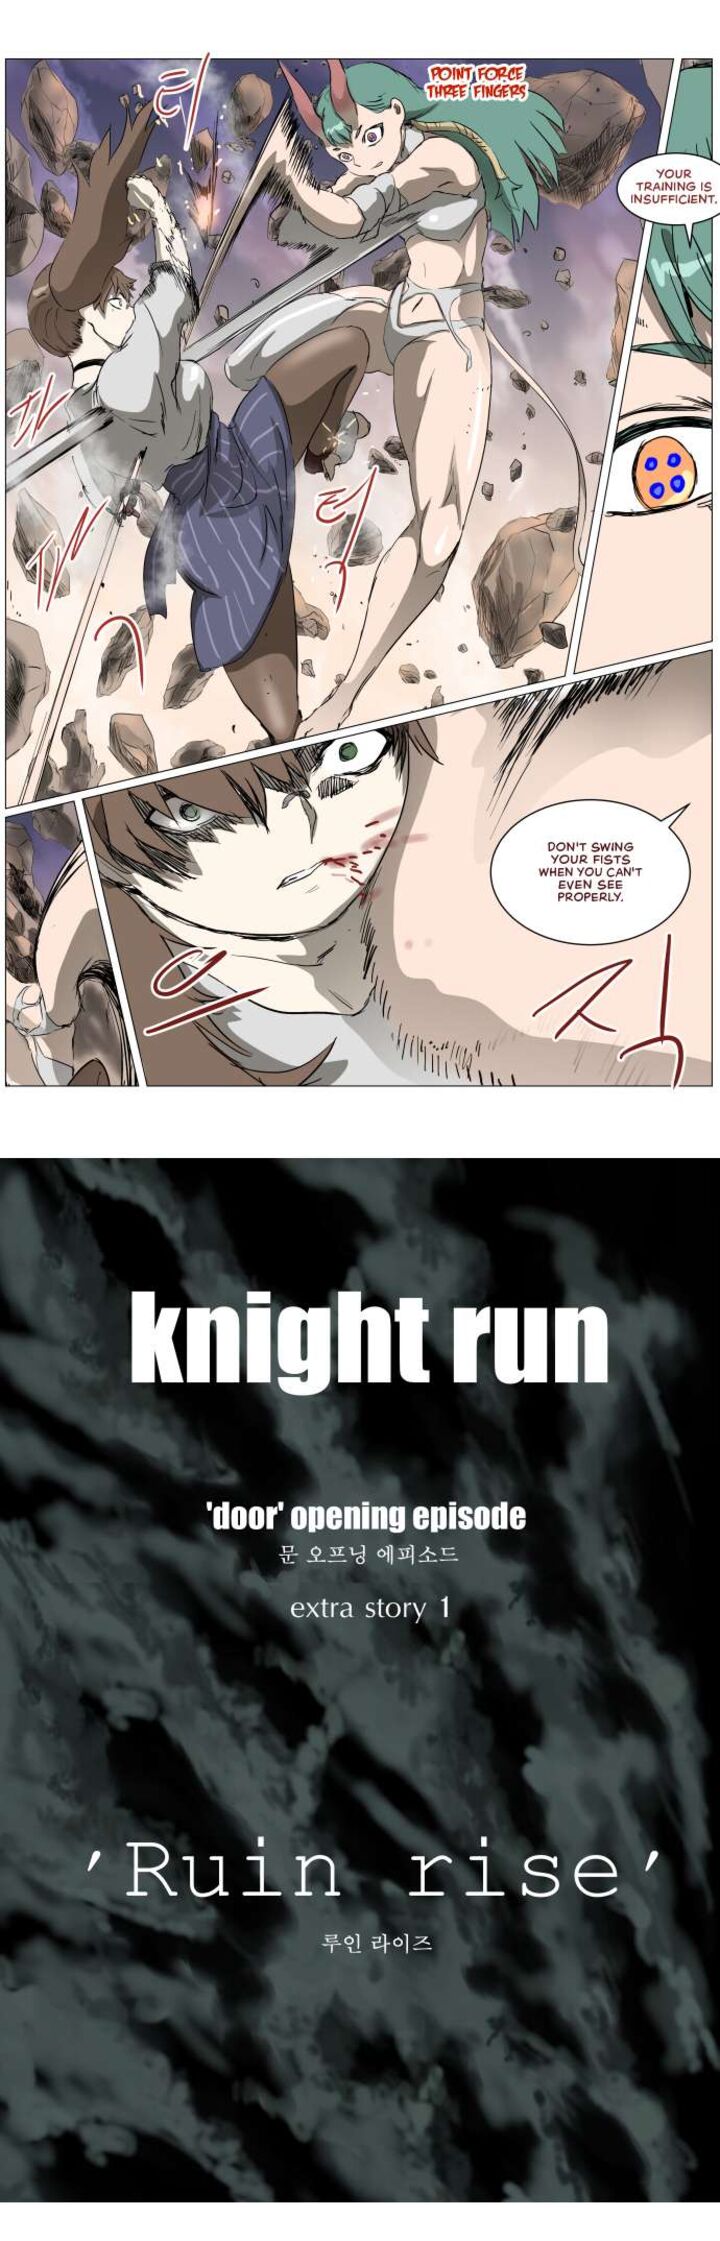 Knight Run 298 16